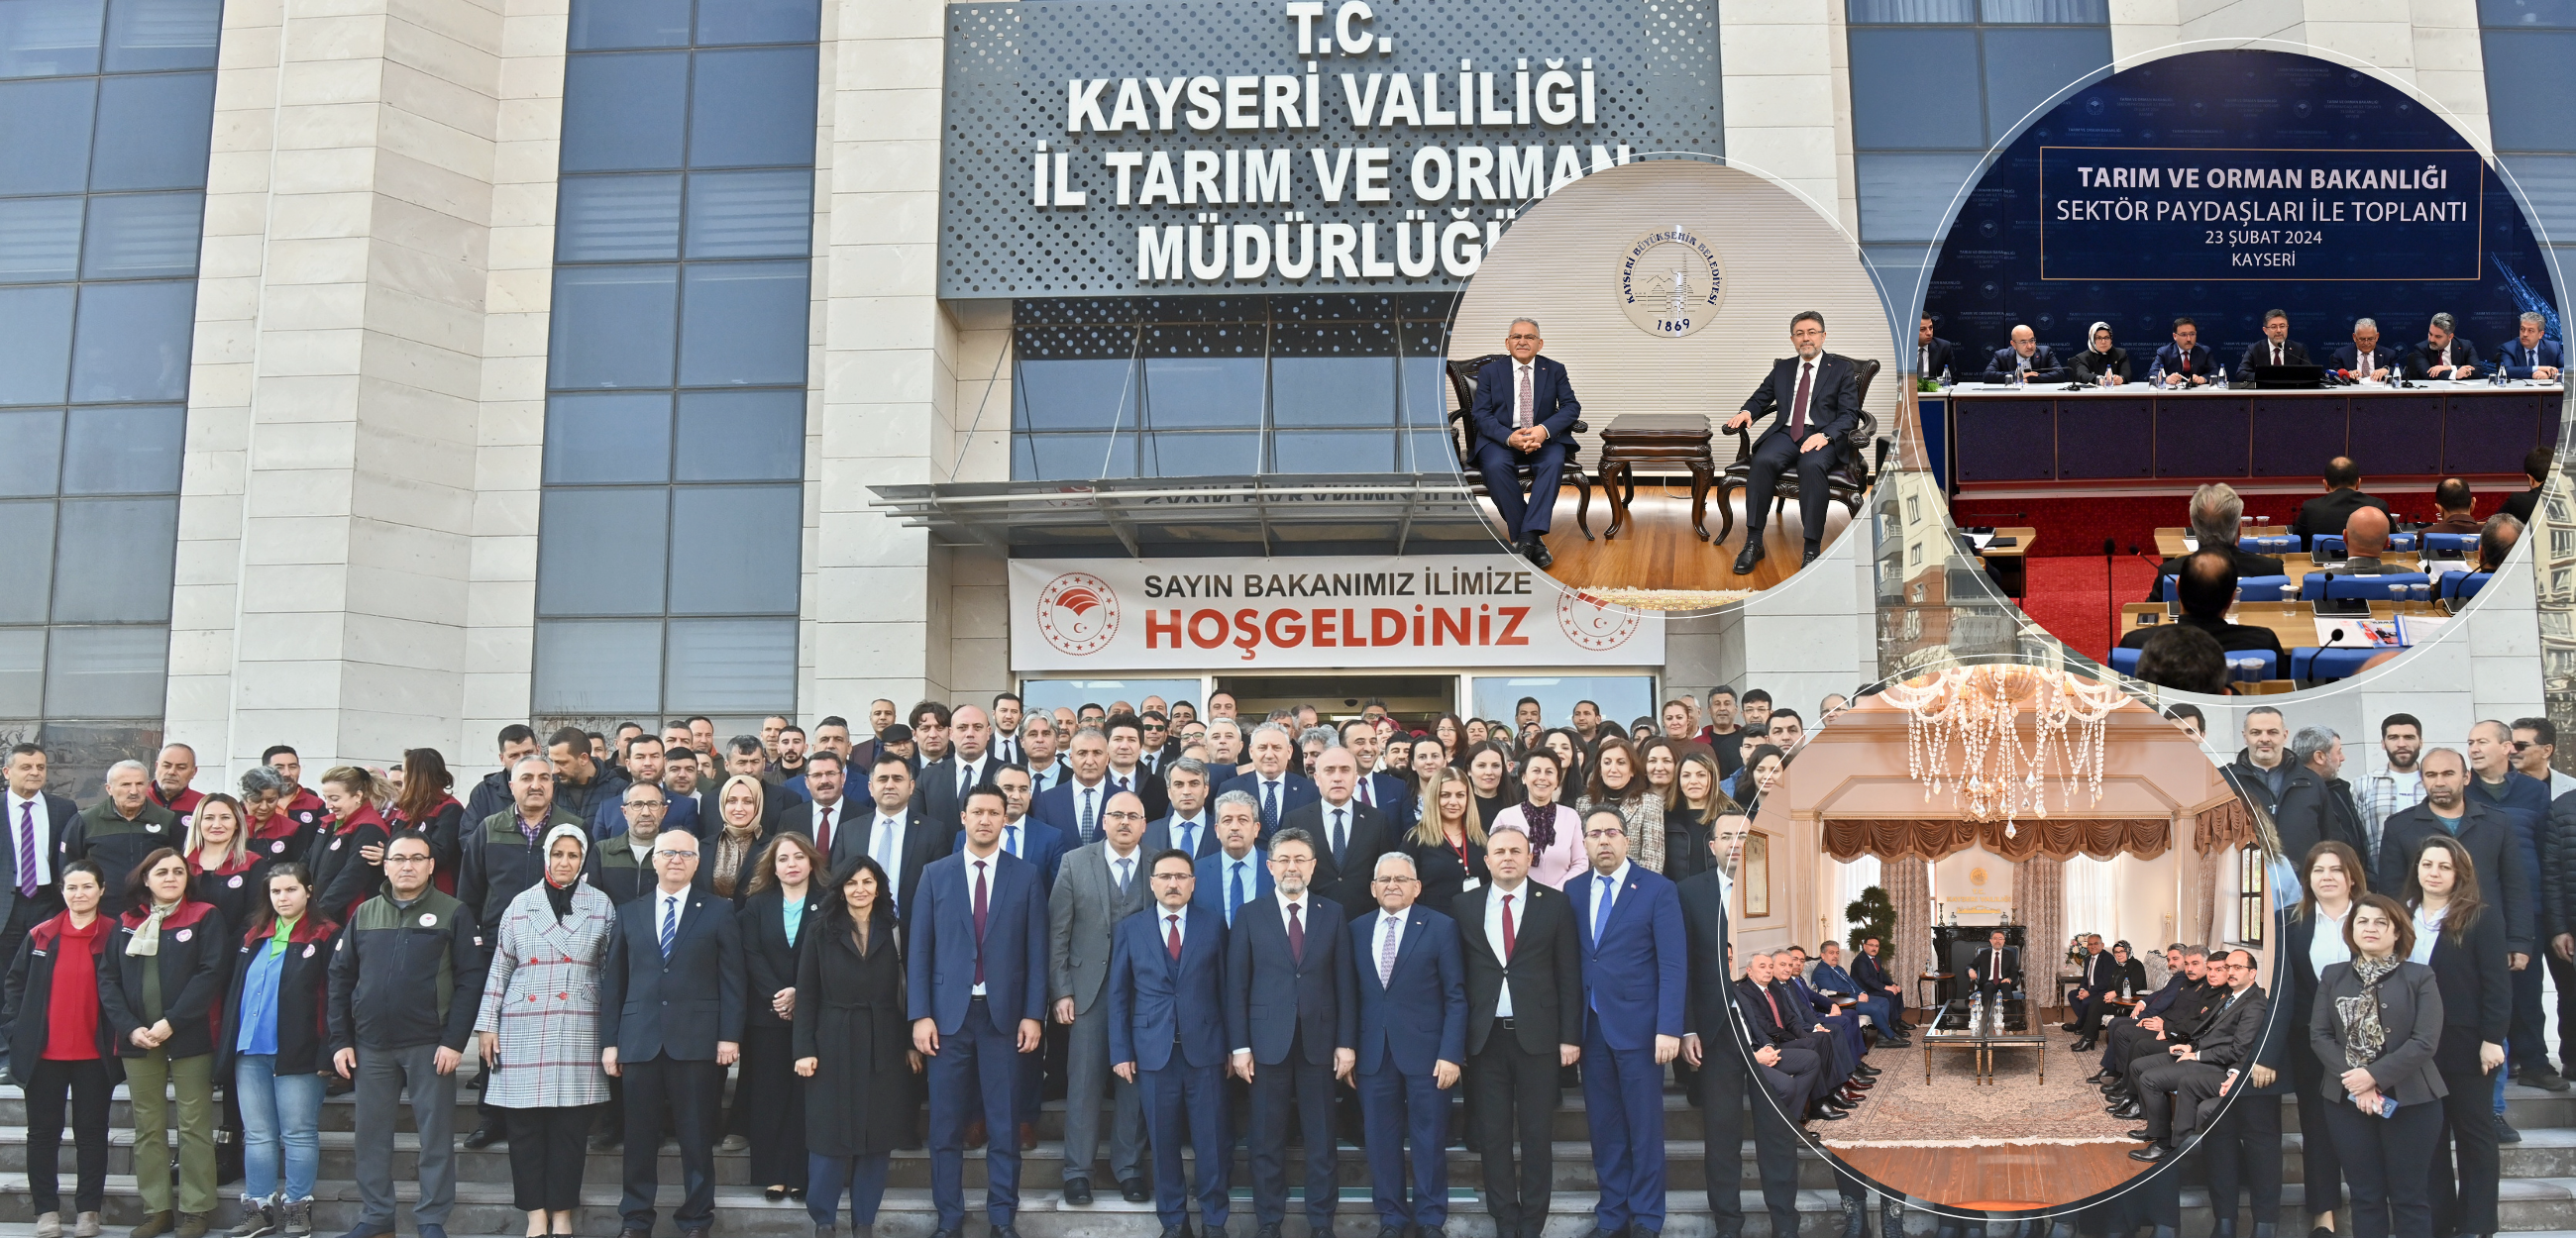 Tarım ve Orman Bakanı İbrahim Yumaklı, Kayseri'de ziyaretler gerçekleştirdi ve gıda arz güvenliği hakkında önemli açıklamalarda bulundu.